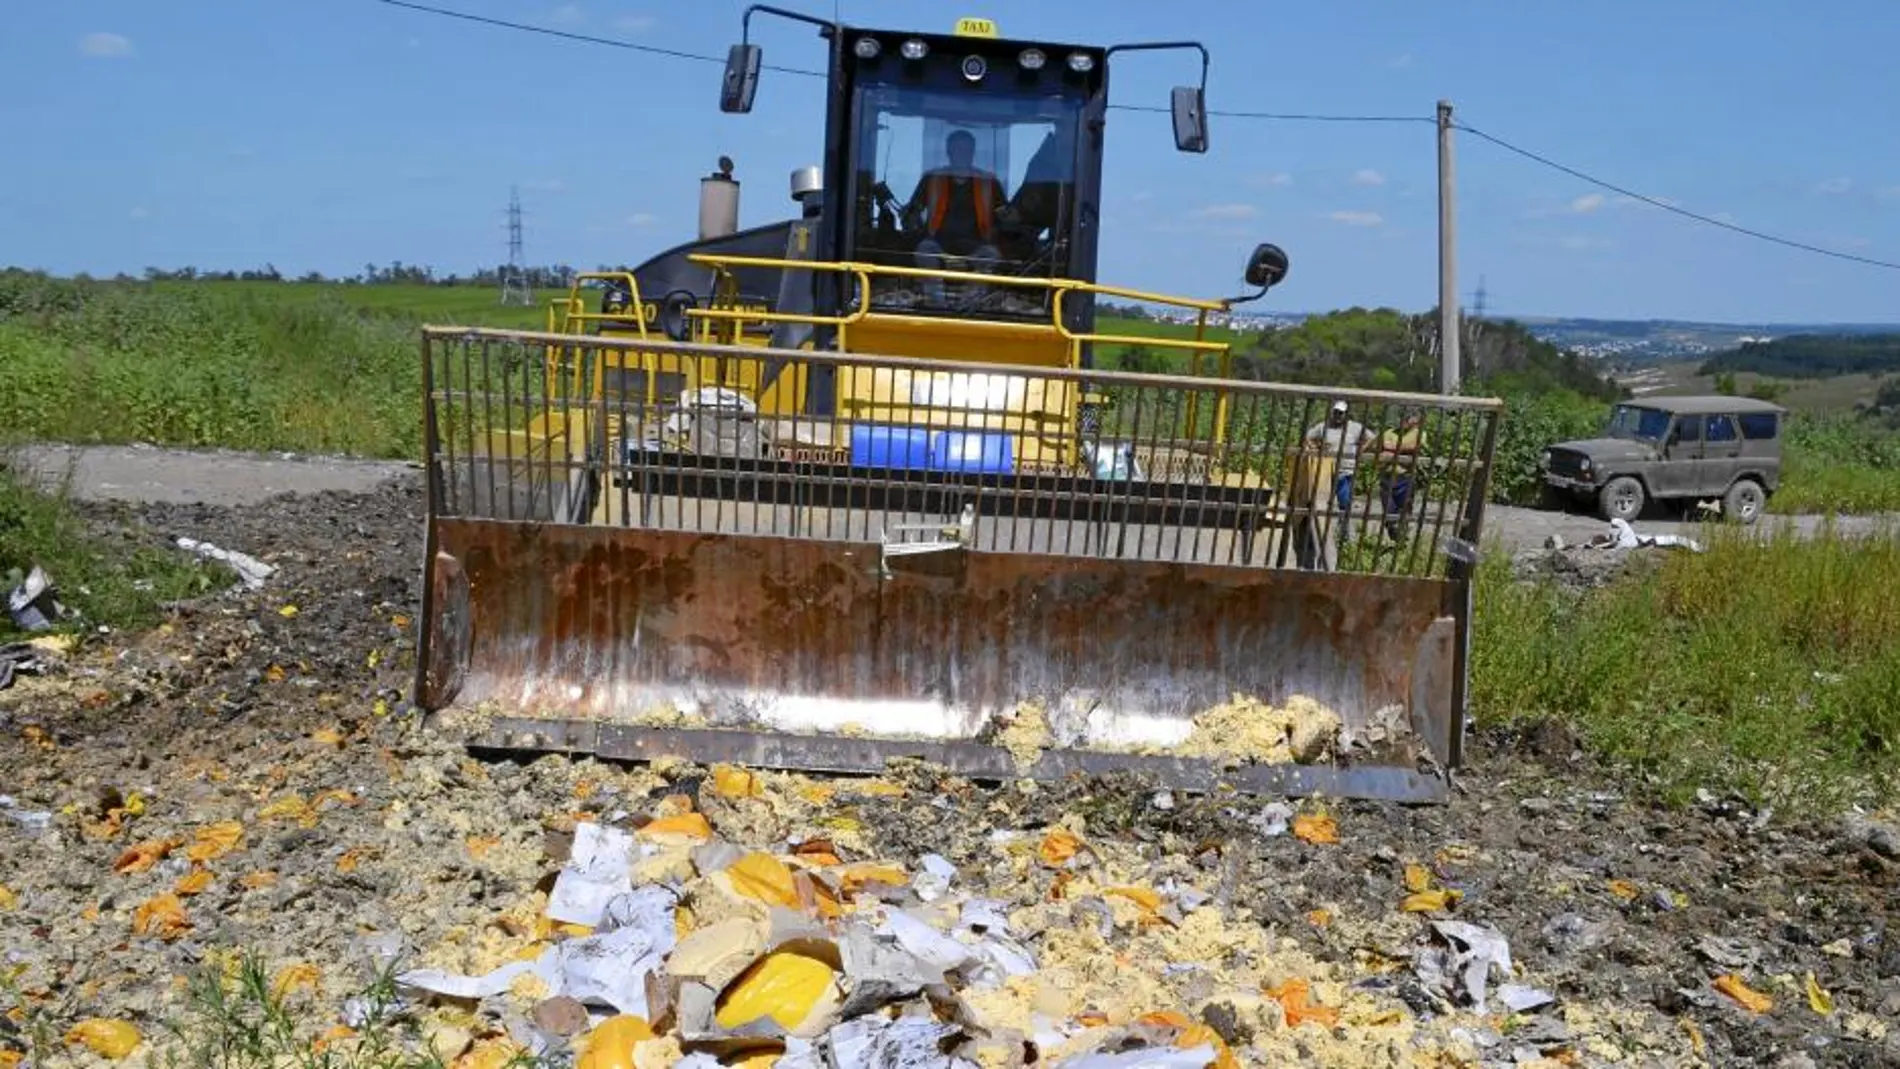 Un tractor destruye cultivos en la región rusa de Belgorod